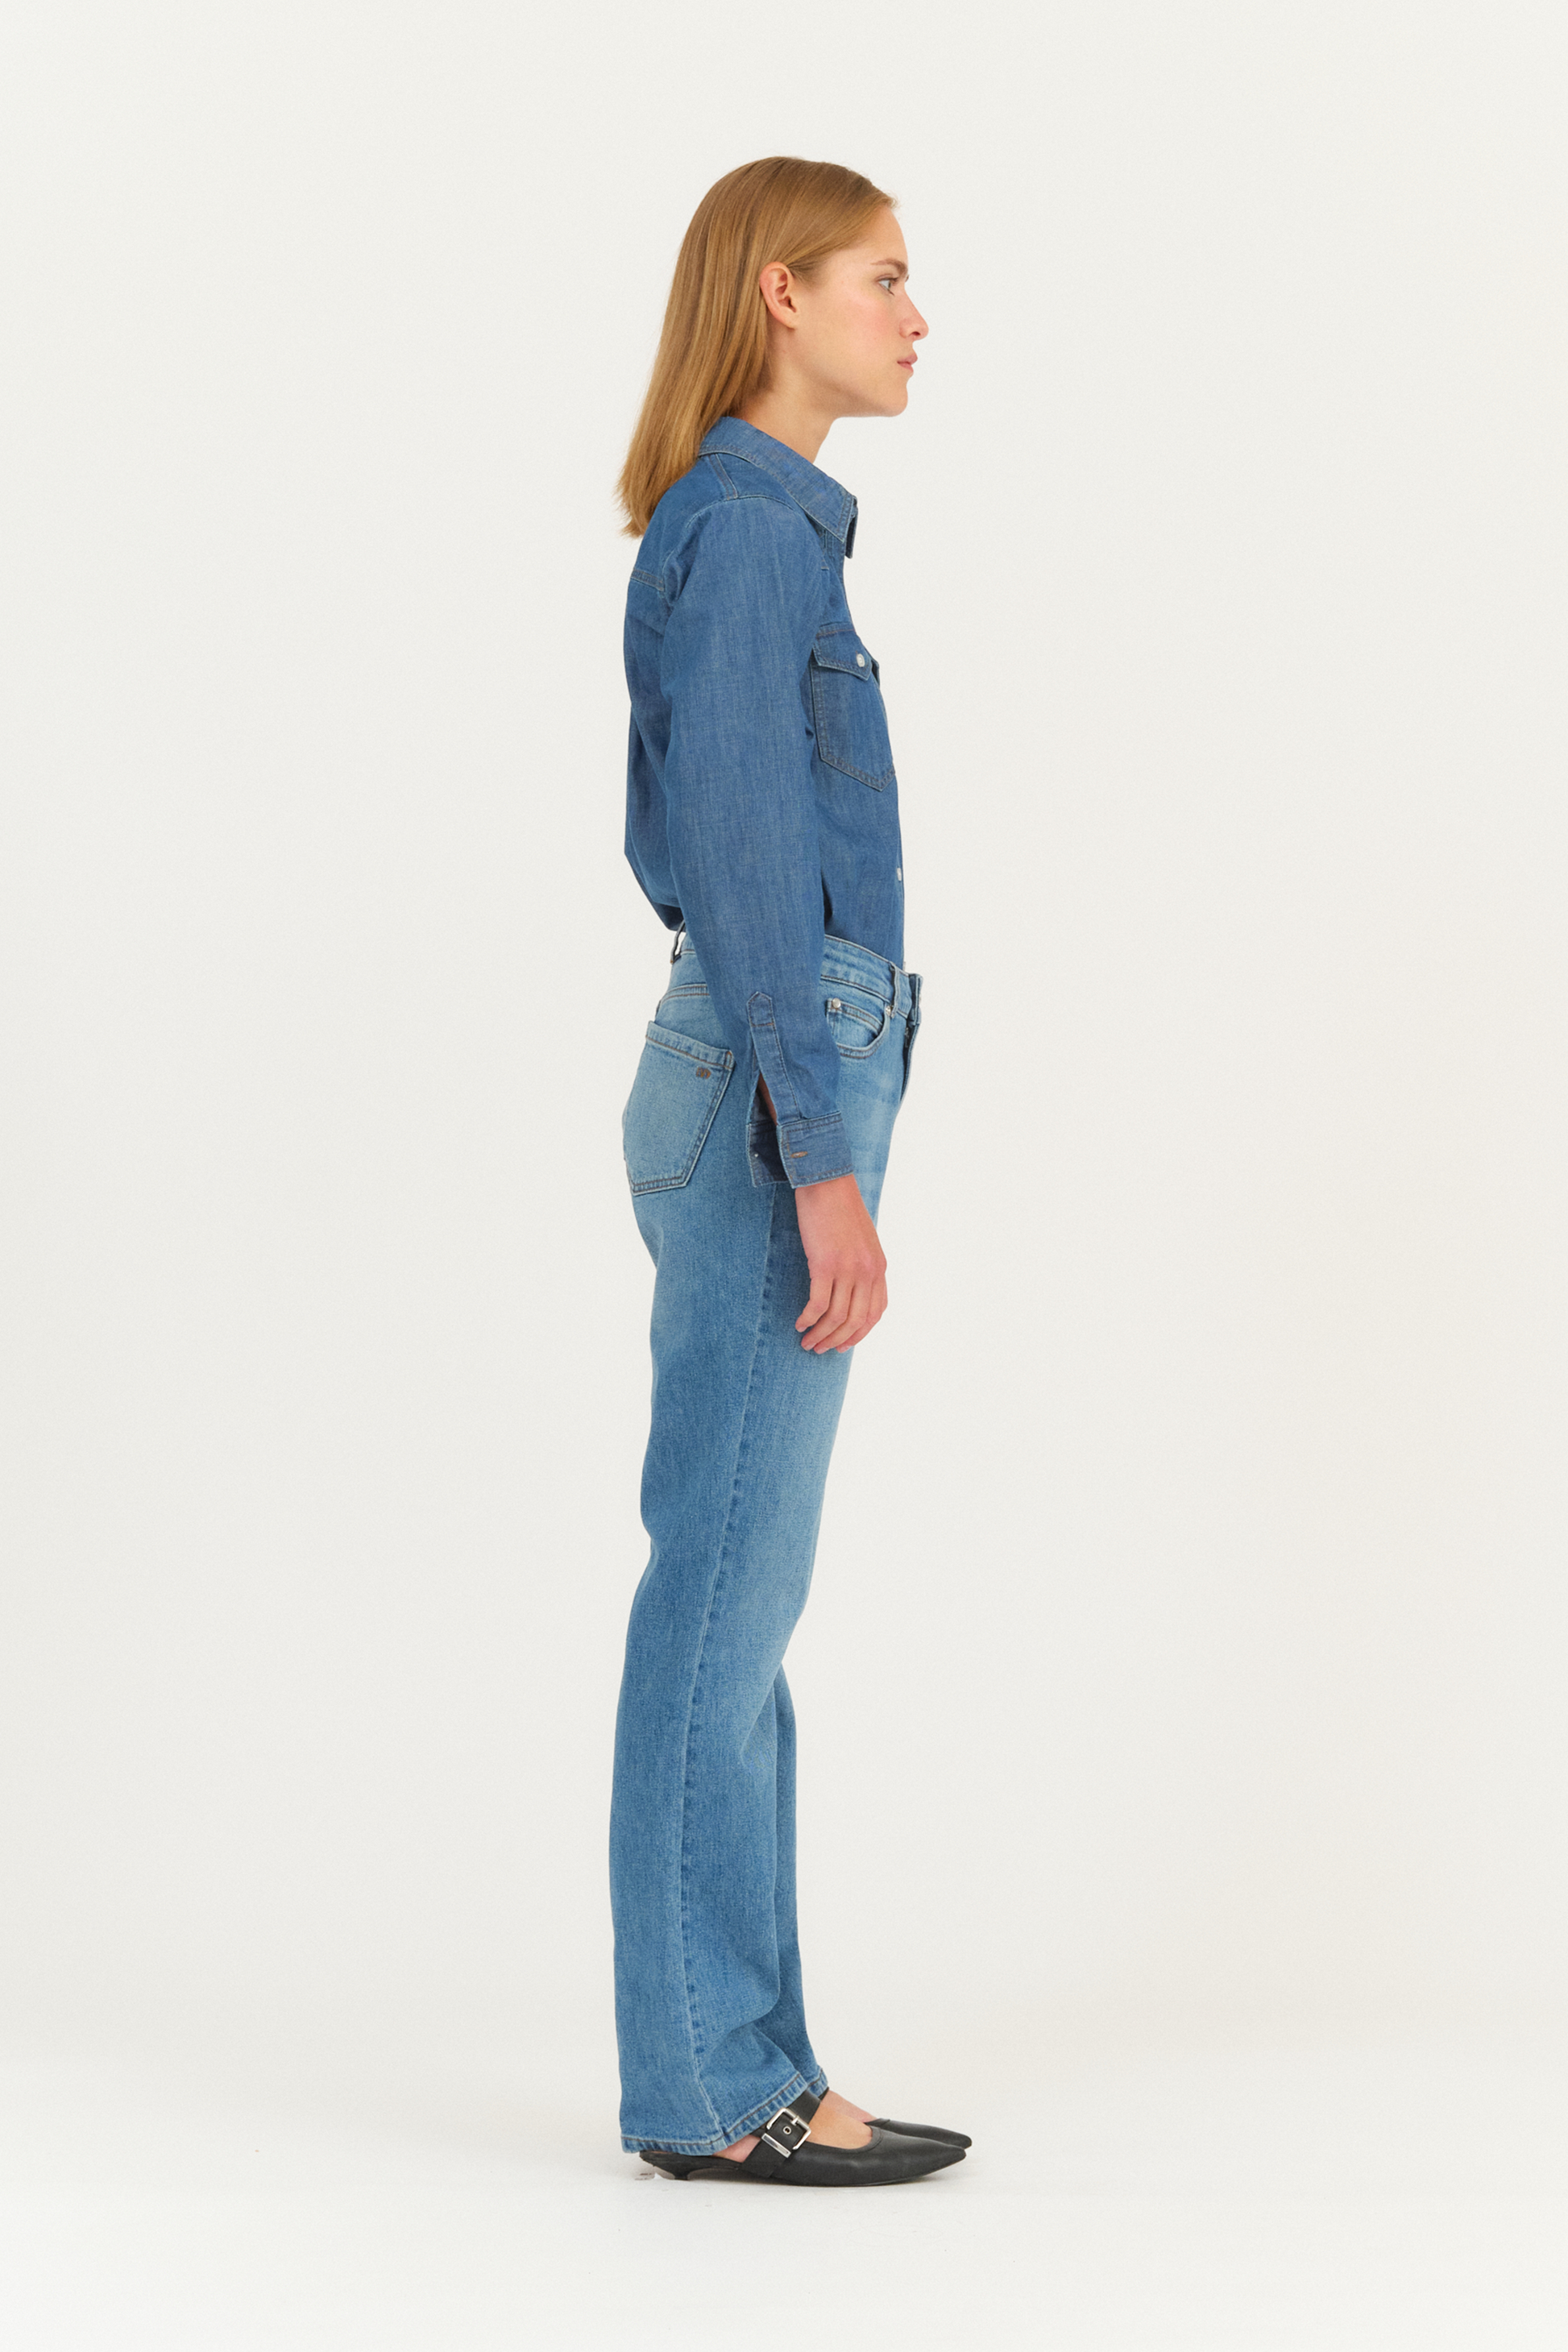 IVY-Lulu Jeans Wash Vintage Indigo – Ivy Copenhagen